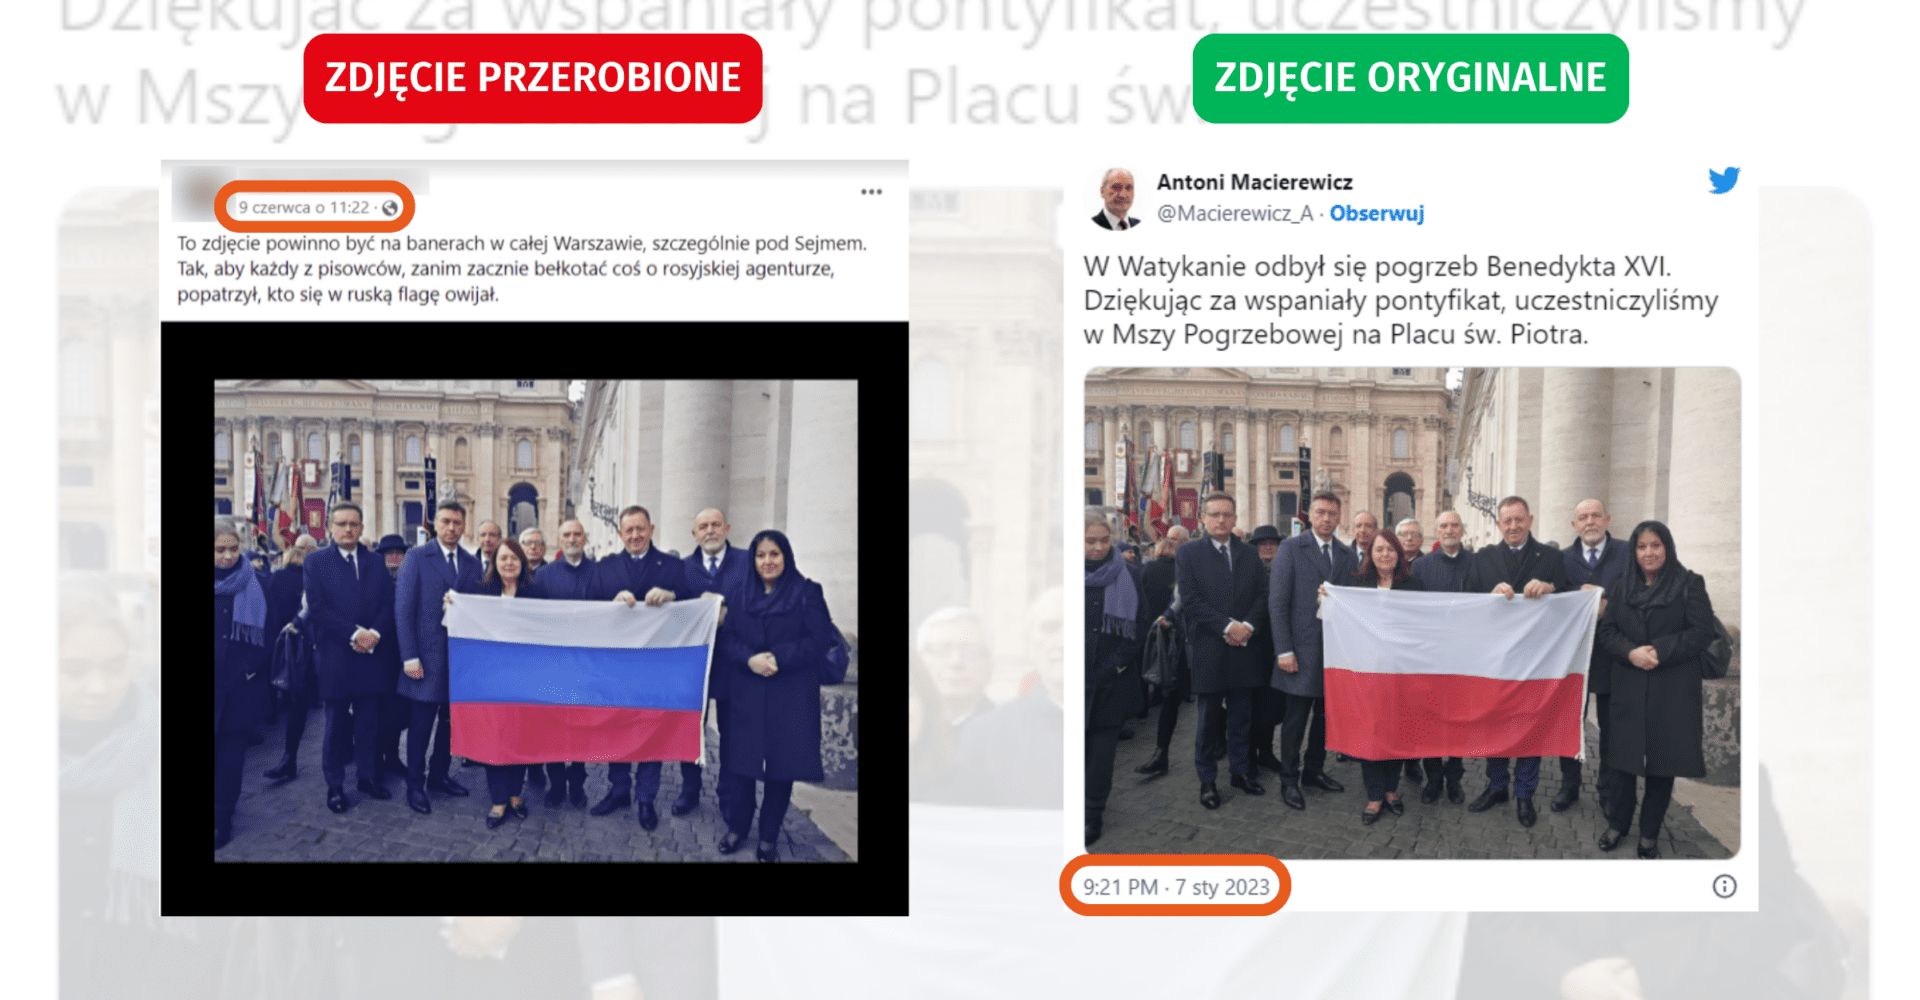 Polska prawica z rosyjską flagą? To fotomontaż